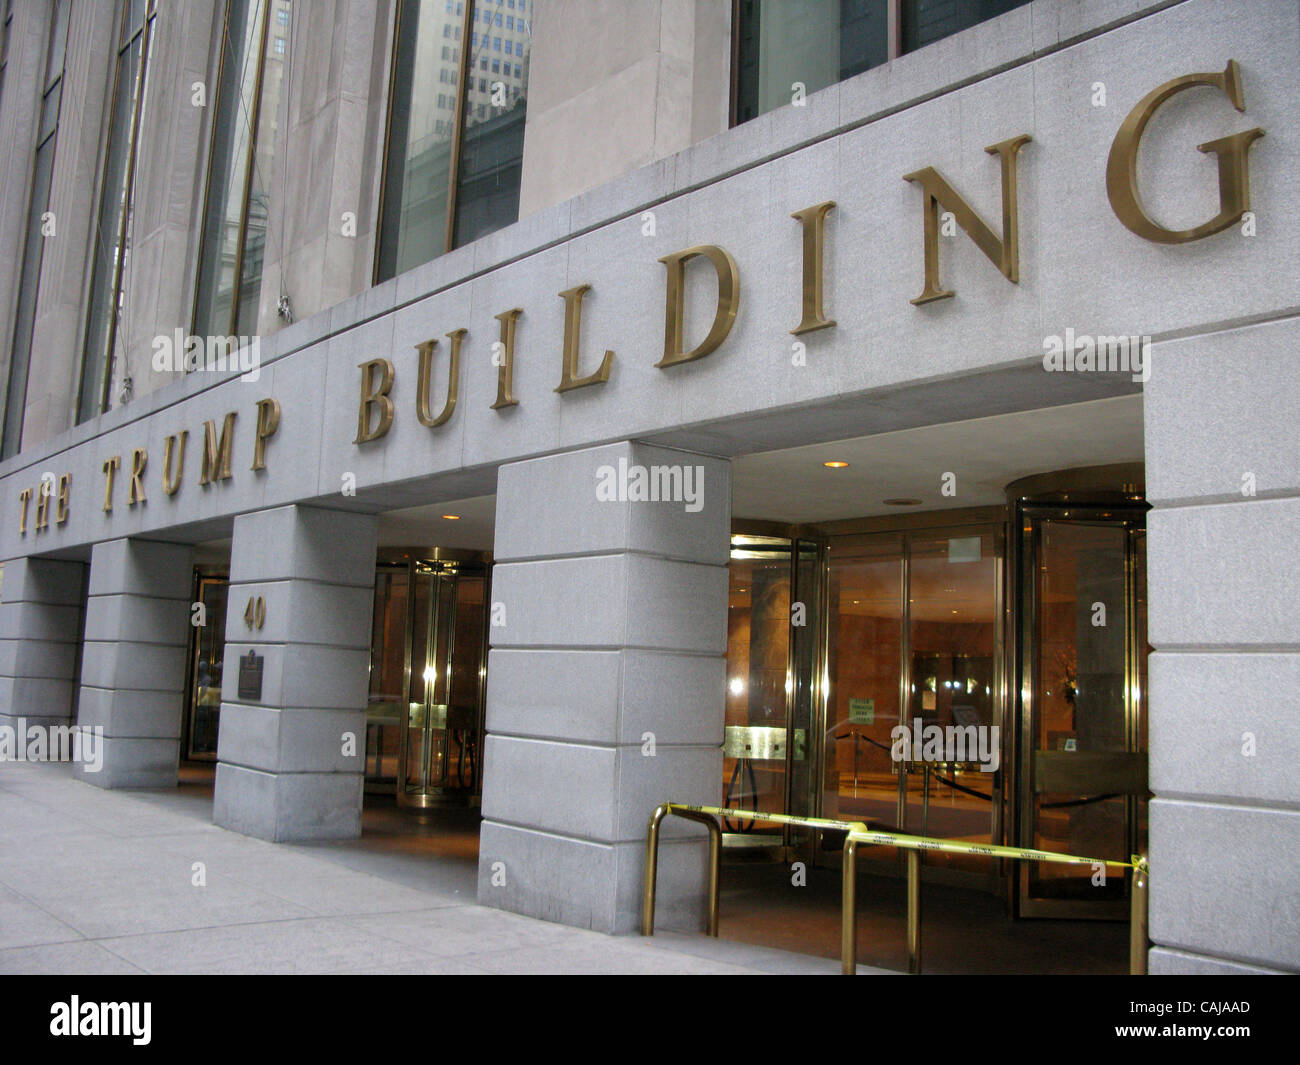 Jan 14, 2008 - New York, NY, Stati Uniti d'America - 40 Wall Street è una storia di 70 grattacielo originariamente noto come la banca della società di Manhattan edificio, ma poi divenne noto tramite l'indirizzo numerico quando il suo inquilino fondatori si fuse con la Chase National Bank per formare la Chase Manhattan Bank. L'edificio è ora Foto Stock